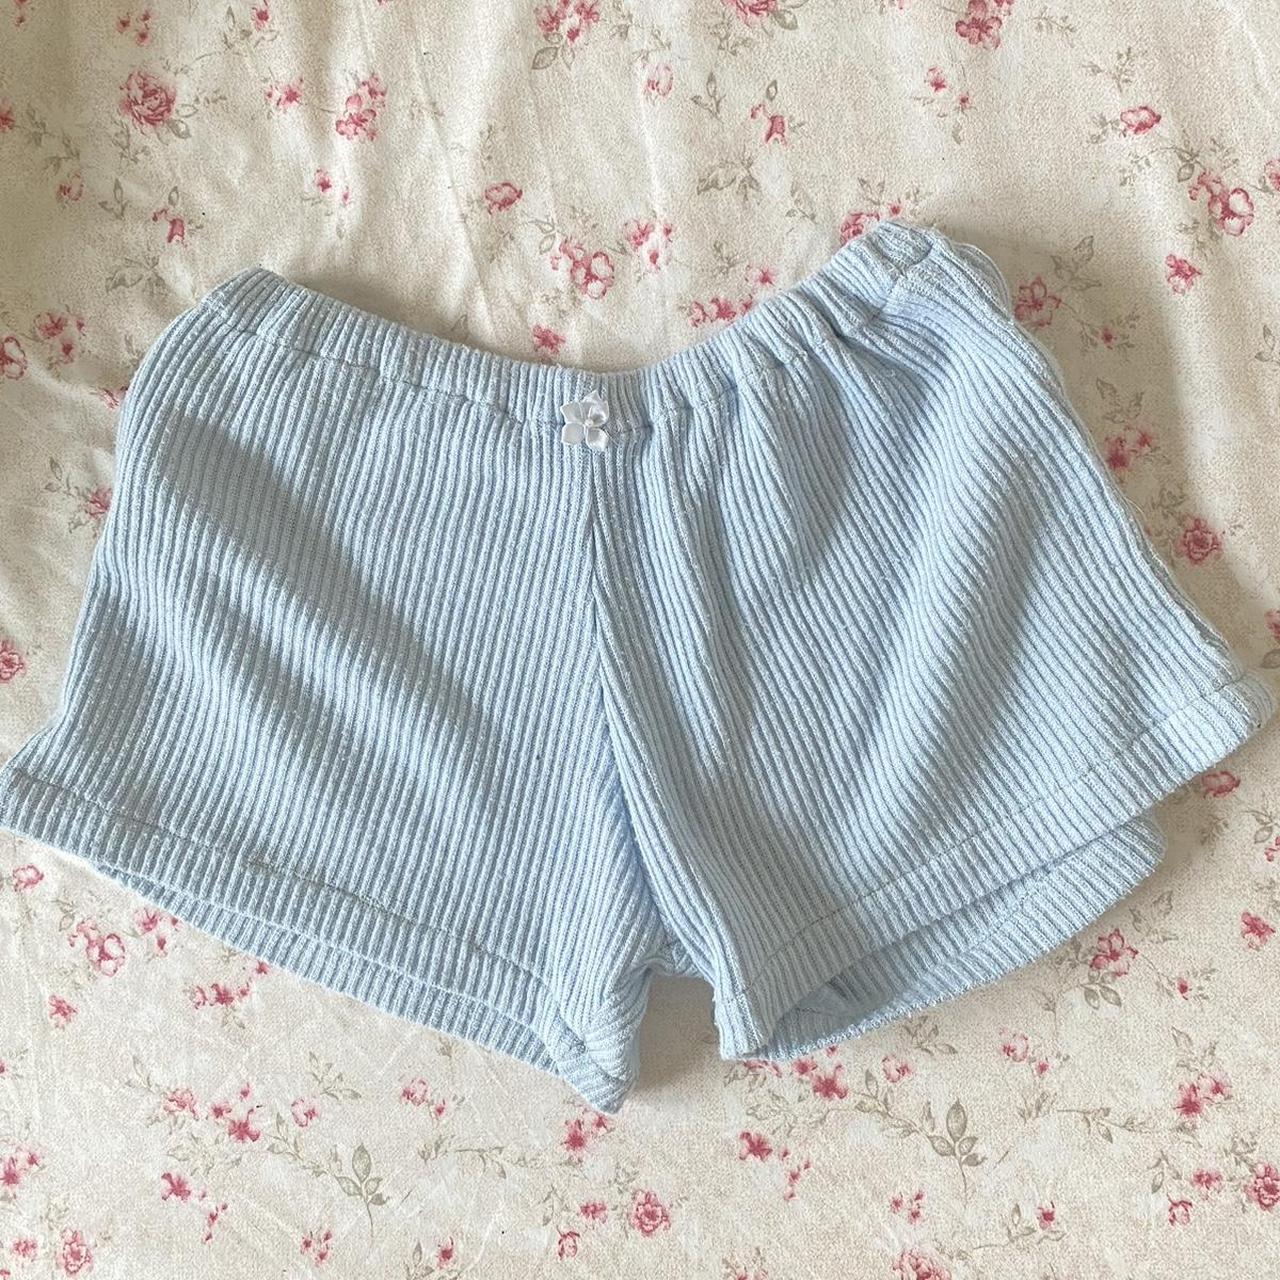 Handmade baby blue pj shorts Cute for spring/summer... - Depop